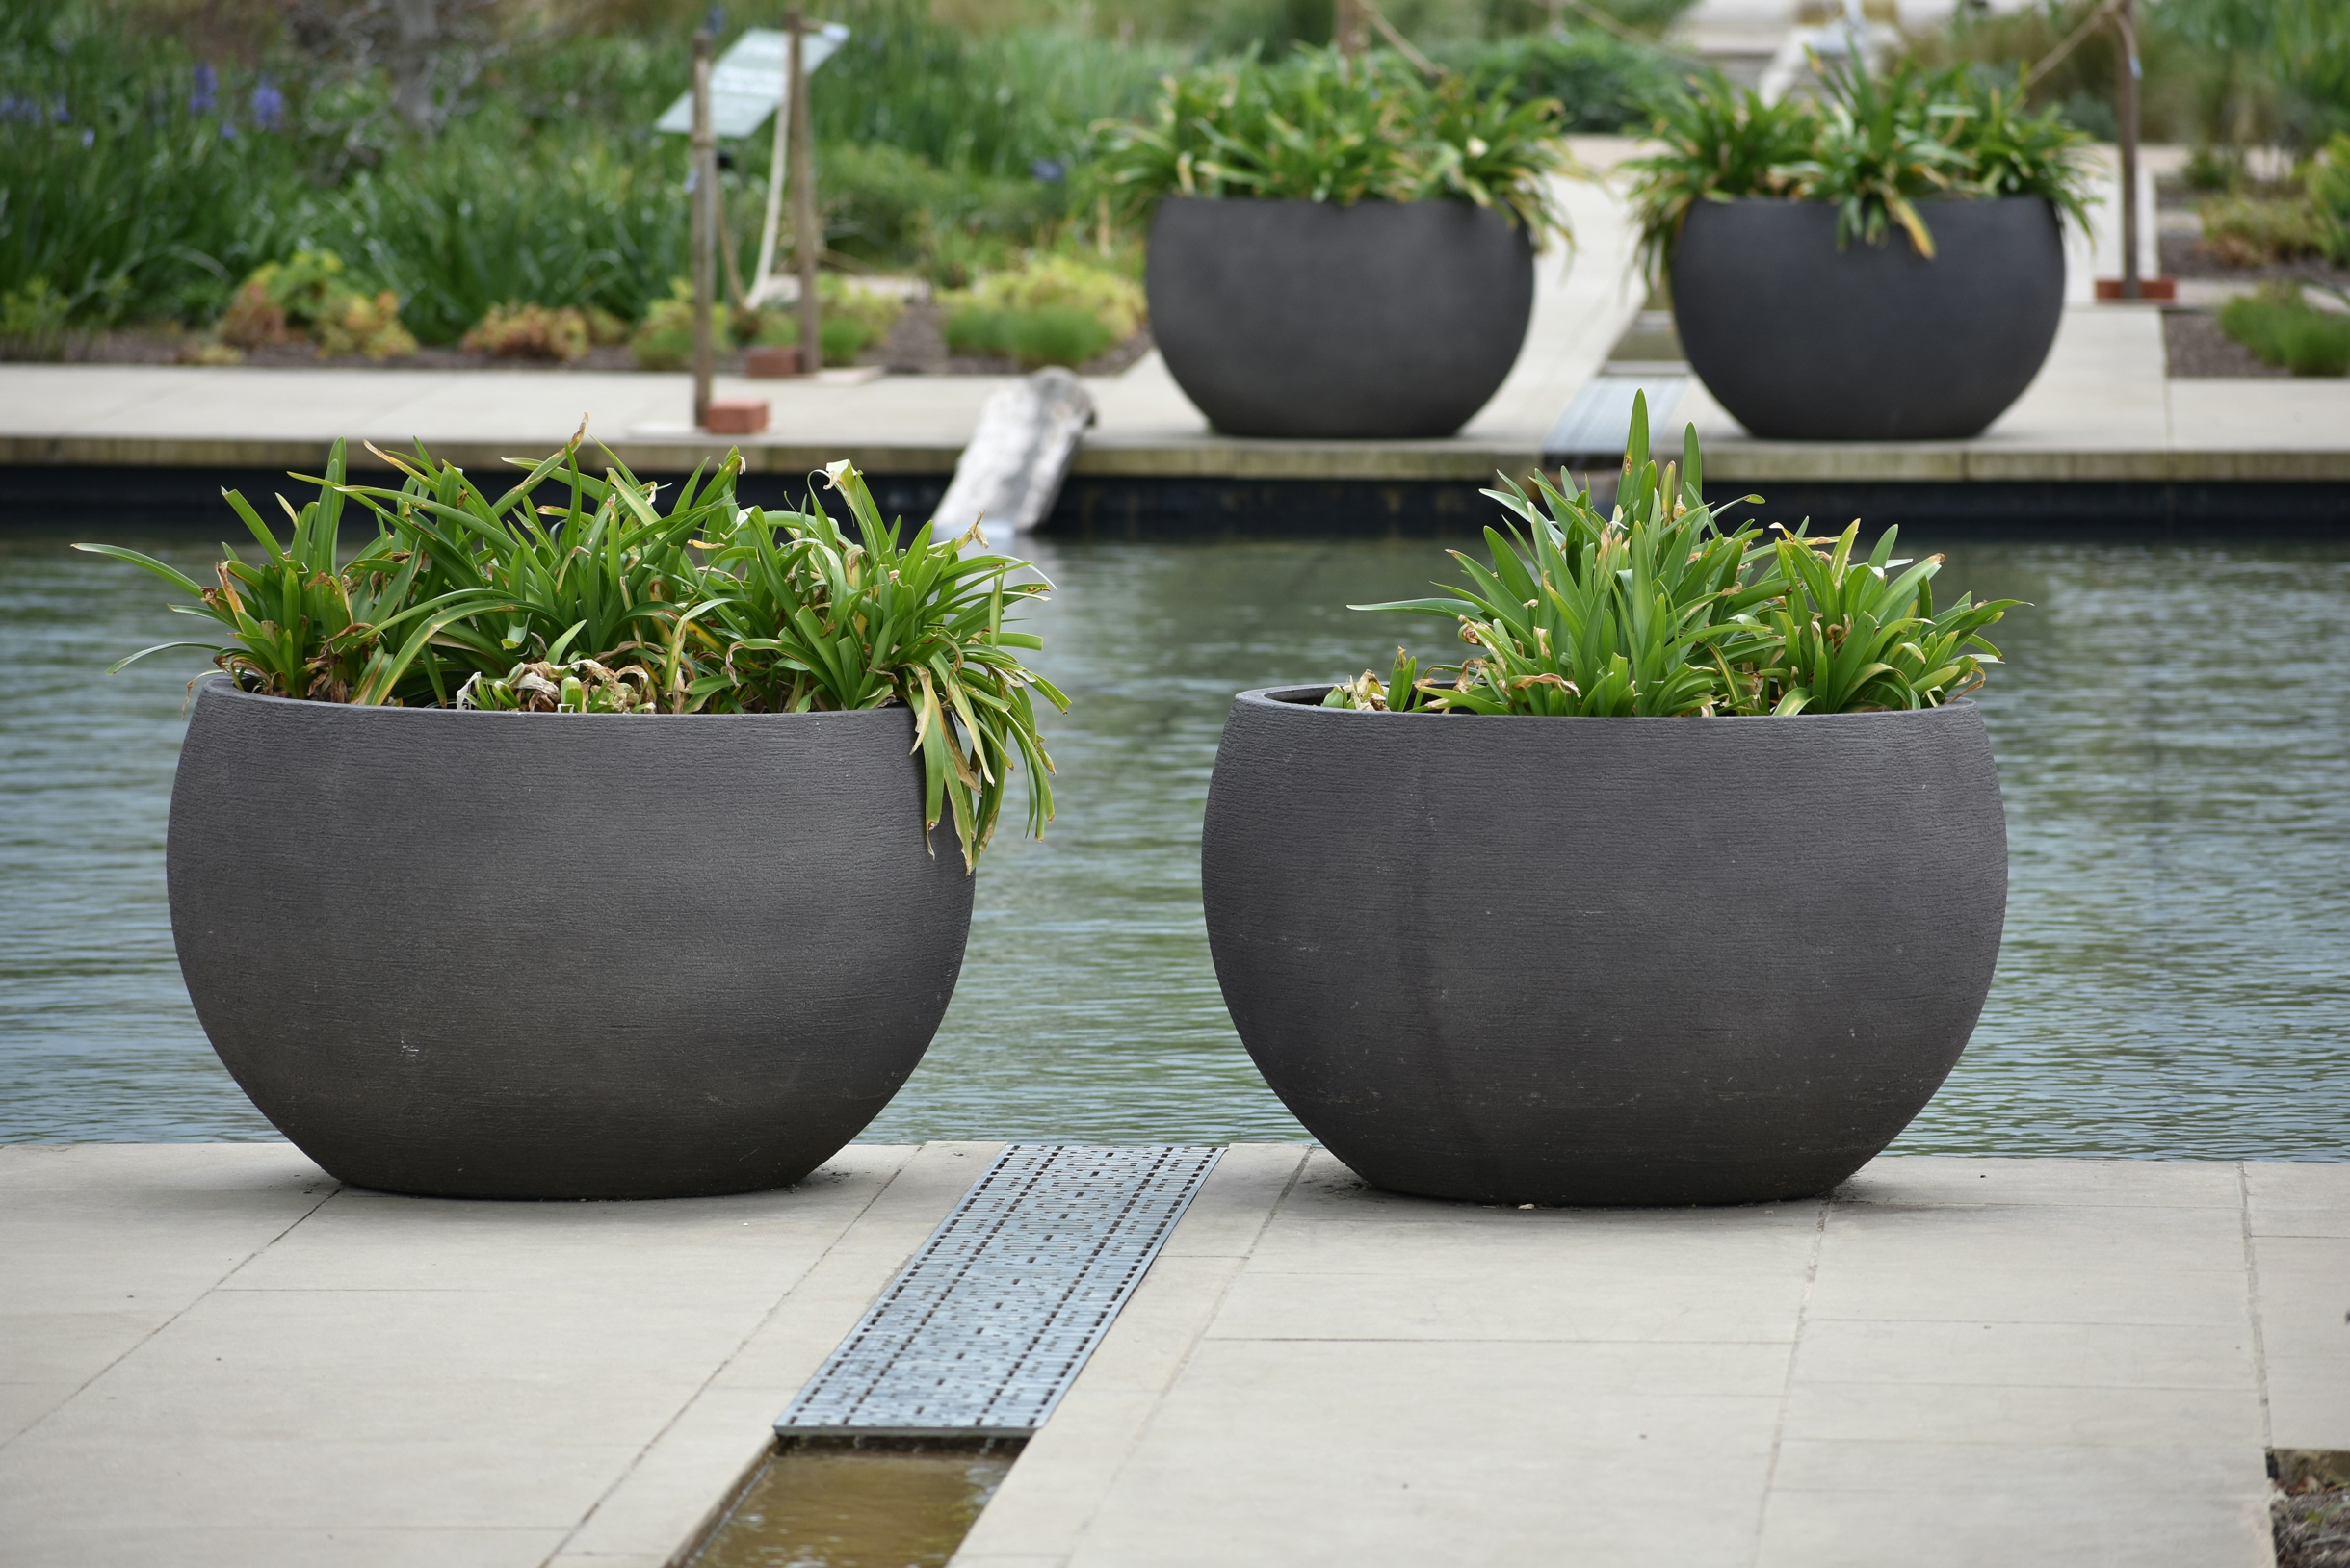 Простые бетонные, каменные или глиняные вазоны в минималистичном саду будут смотреться очень органично. Цветочное оформление в них тоже должно быть спокойным и монохромным. Фотография: Andrew Hall / Unsplash